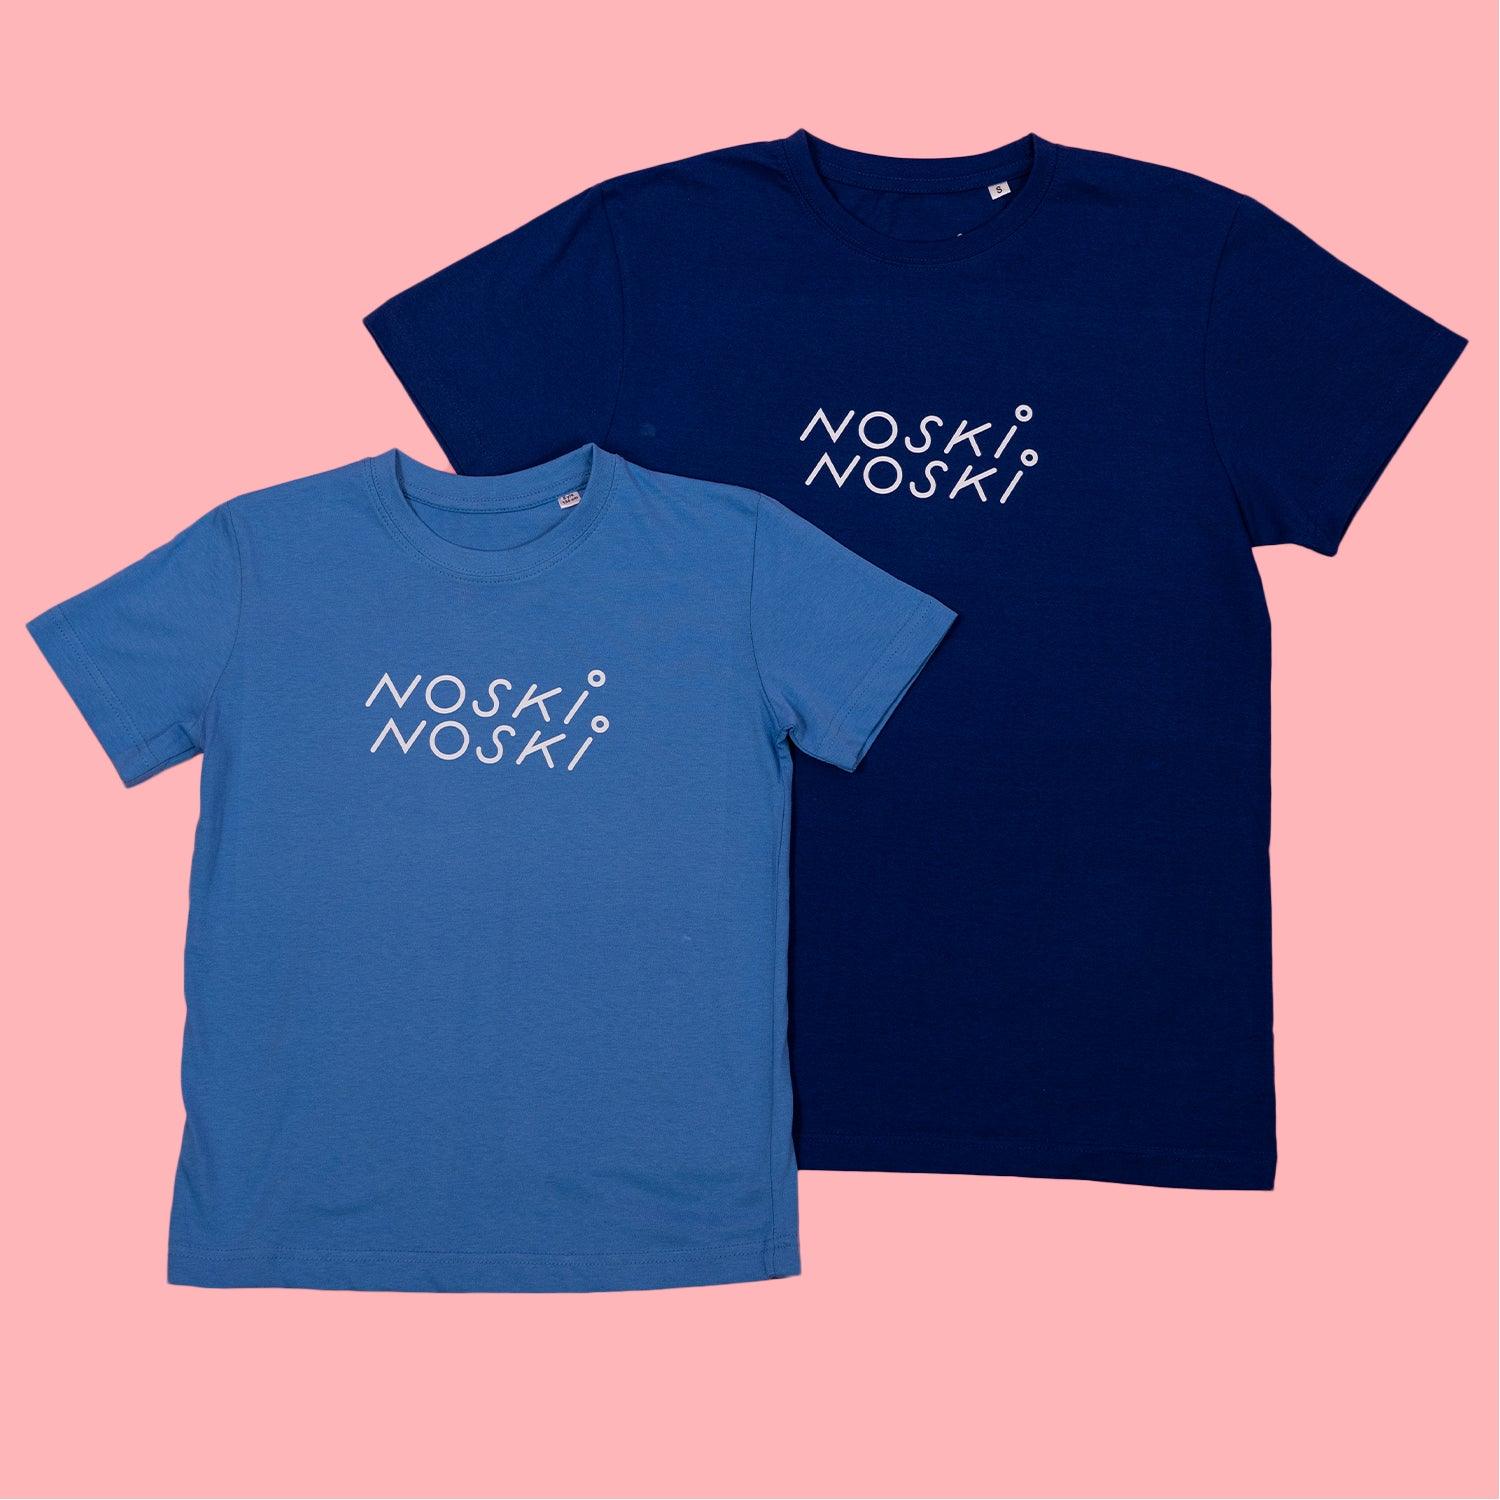 Noski Noski: koszulka dla dziecka NN - Noski Noski